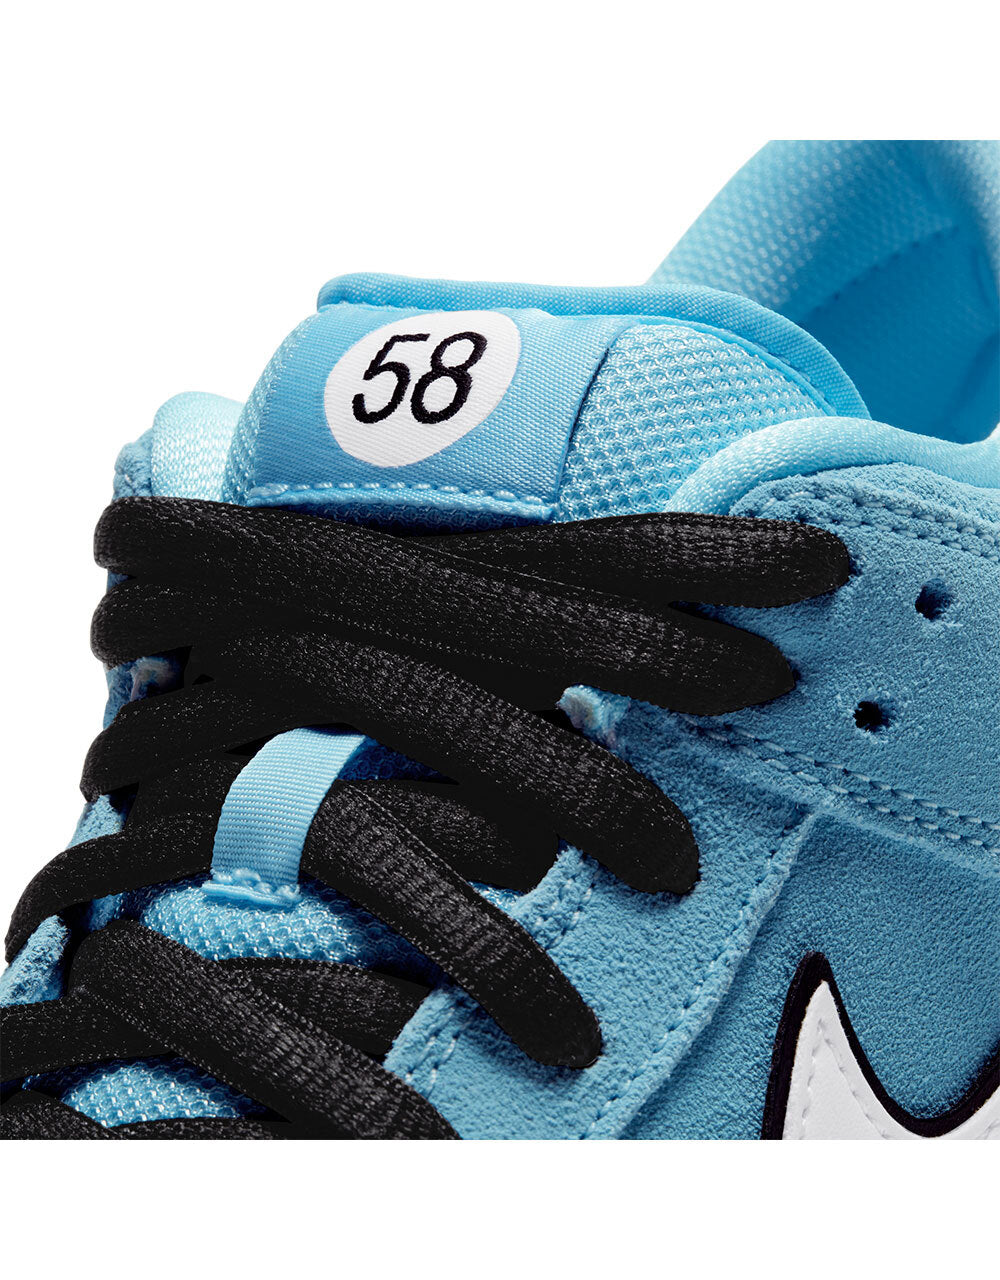 Nike SB 'Gulf' Dunk Low Pro